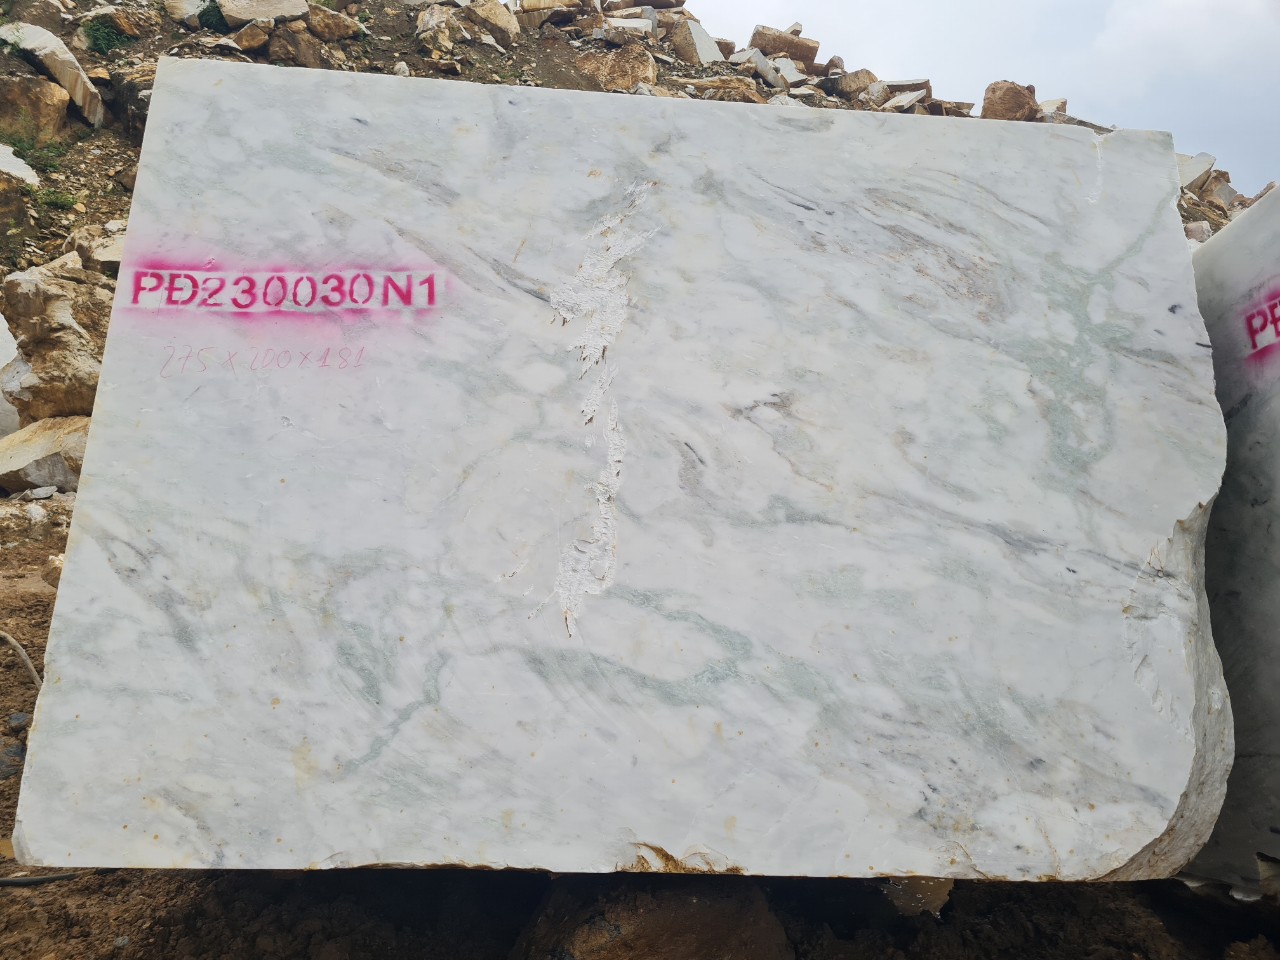 đá marble 30N1